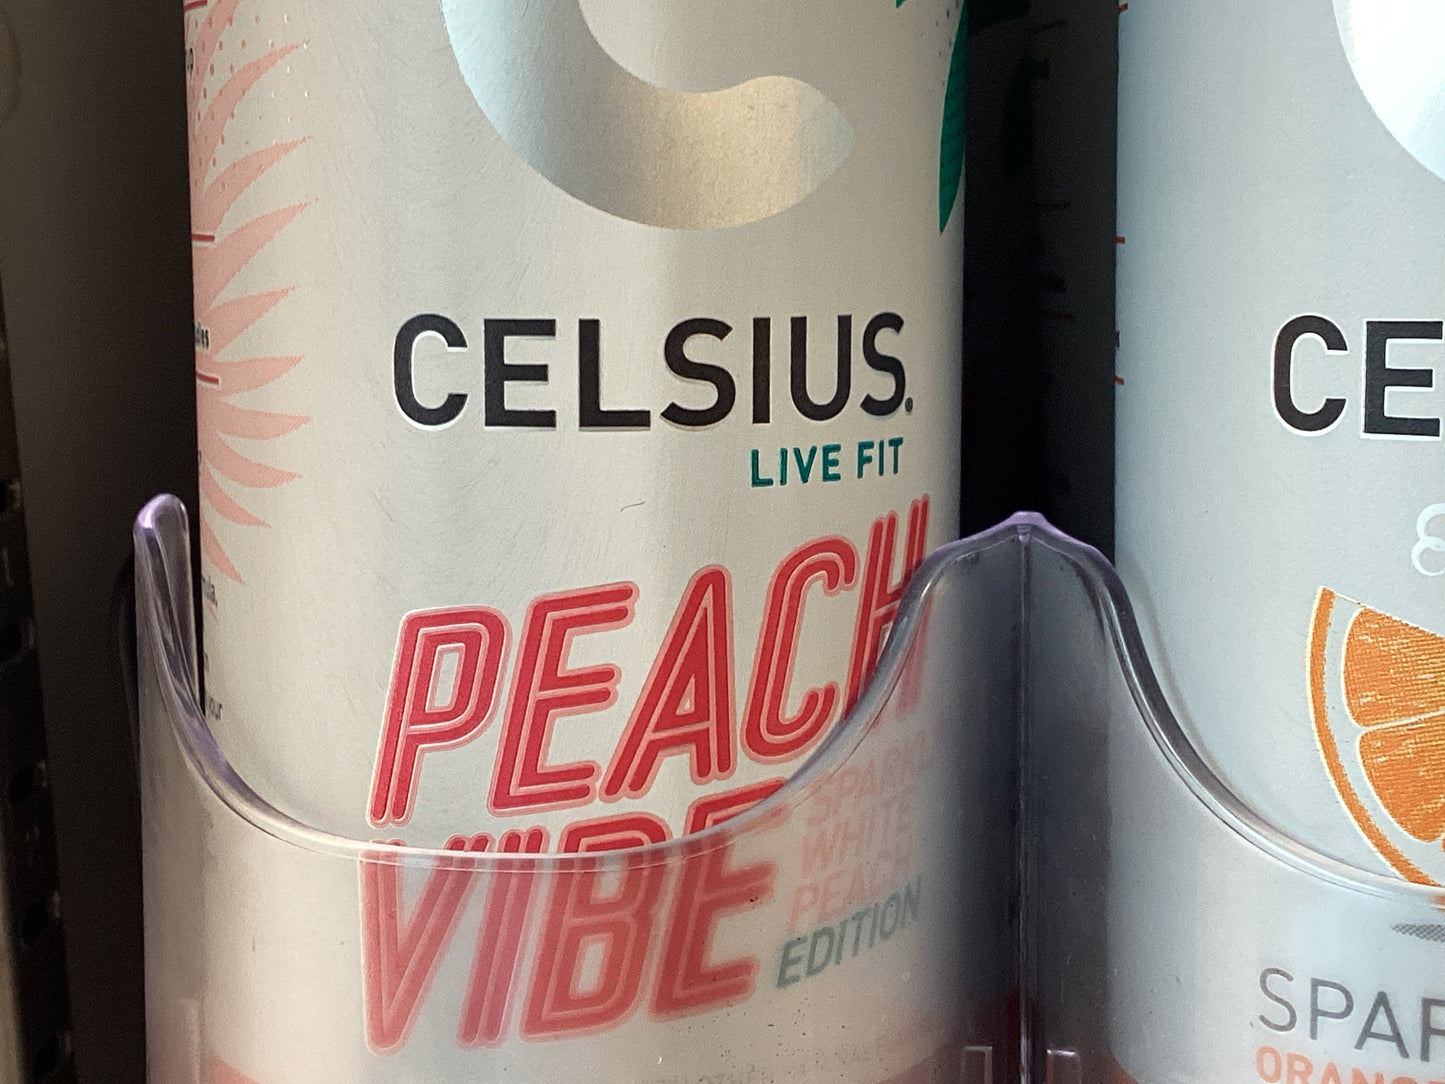 Celcius (Celsius)